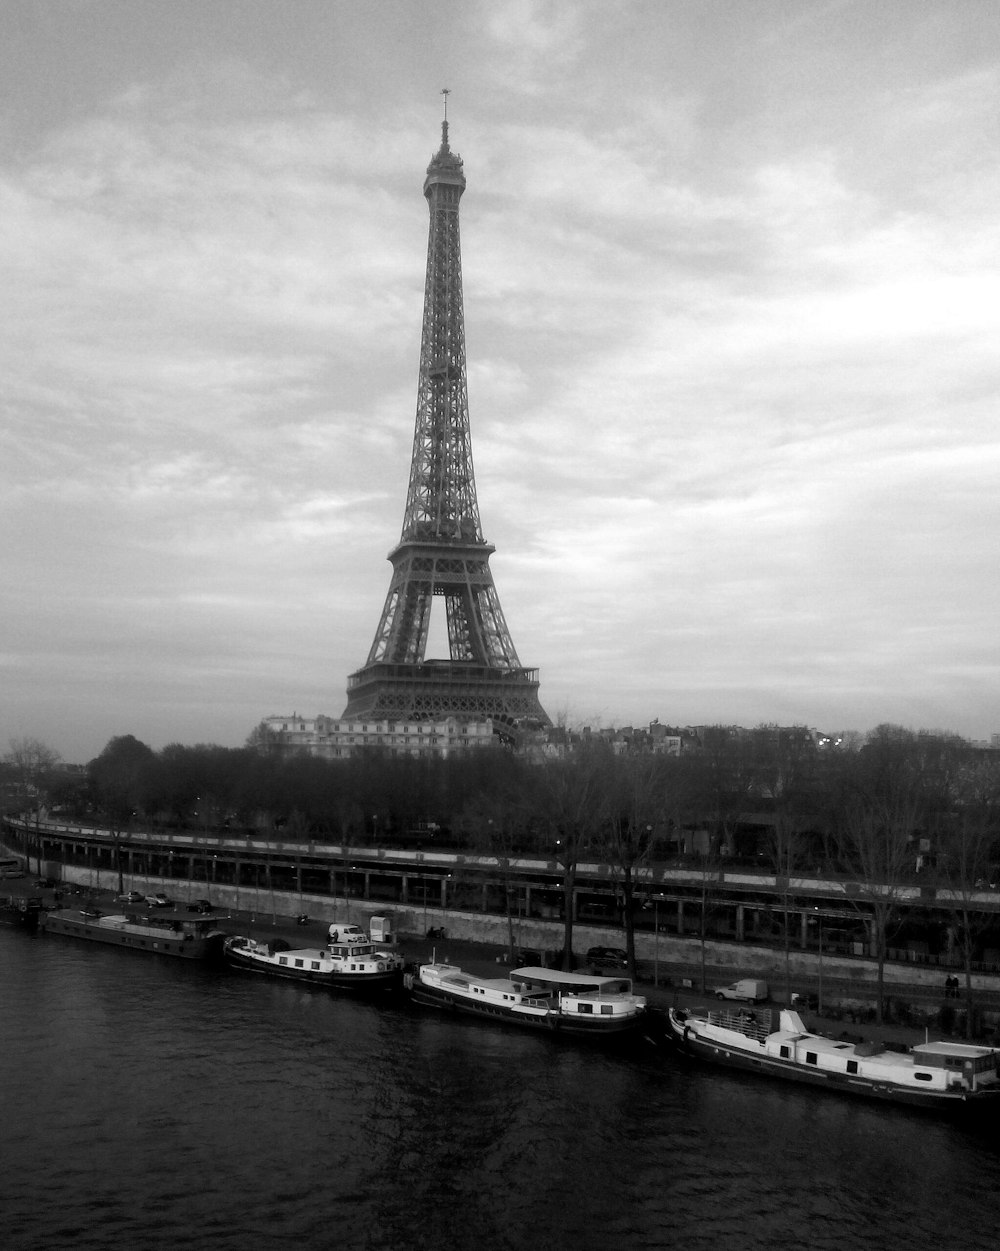 photo en niveaux de gris de la tour Eiffel et des bateaux amarrés près de la jetée